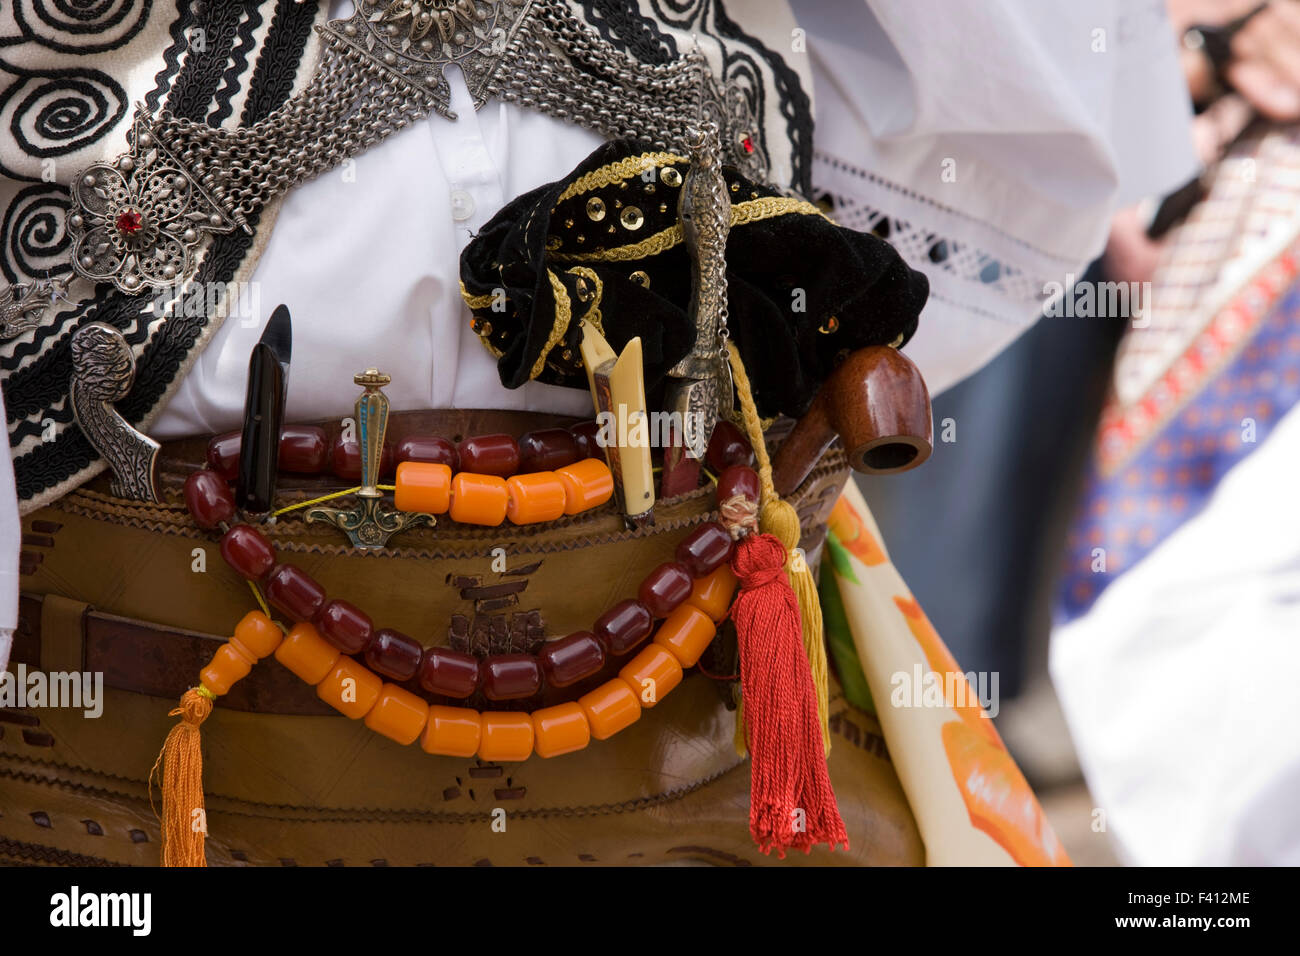 Closeuþ di un greco vlach decorato "elahi' rack pistola durante la rinascita del Vlach wedding satyrical personalizzata durante Pasqua, Tebe Grecia, Foto Stock